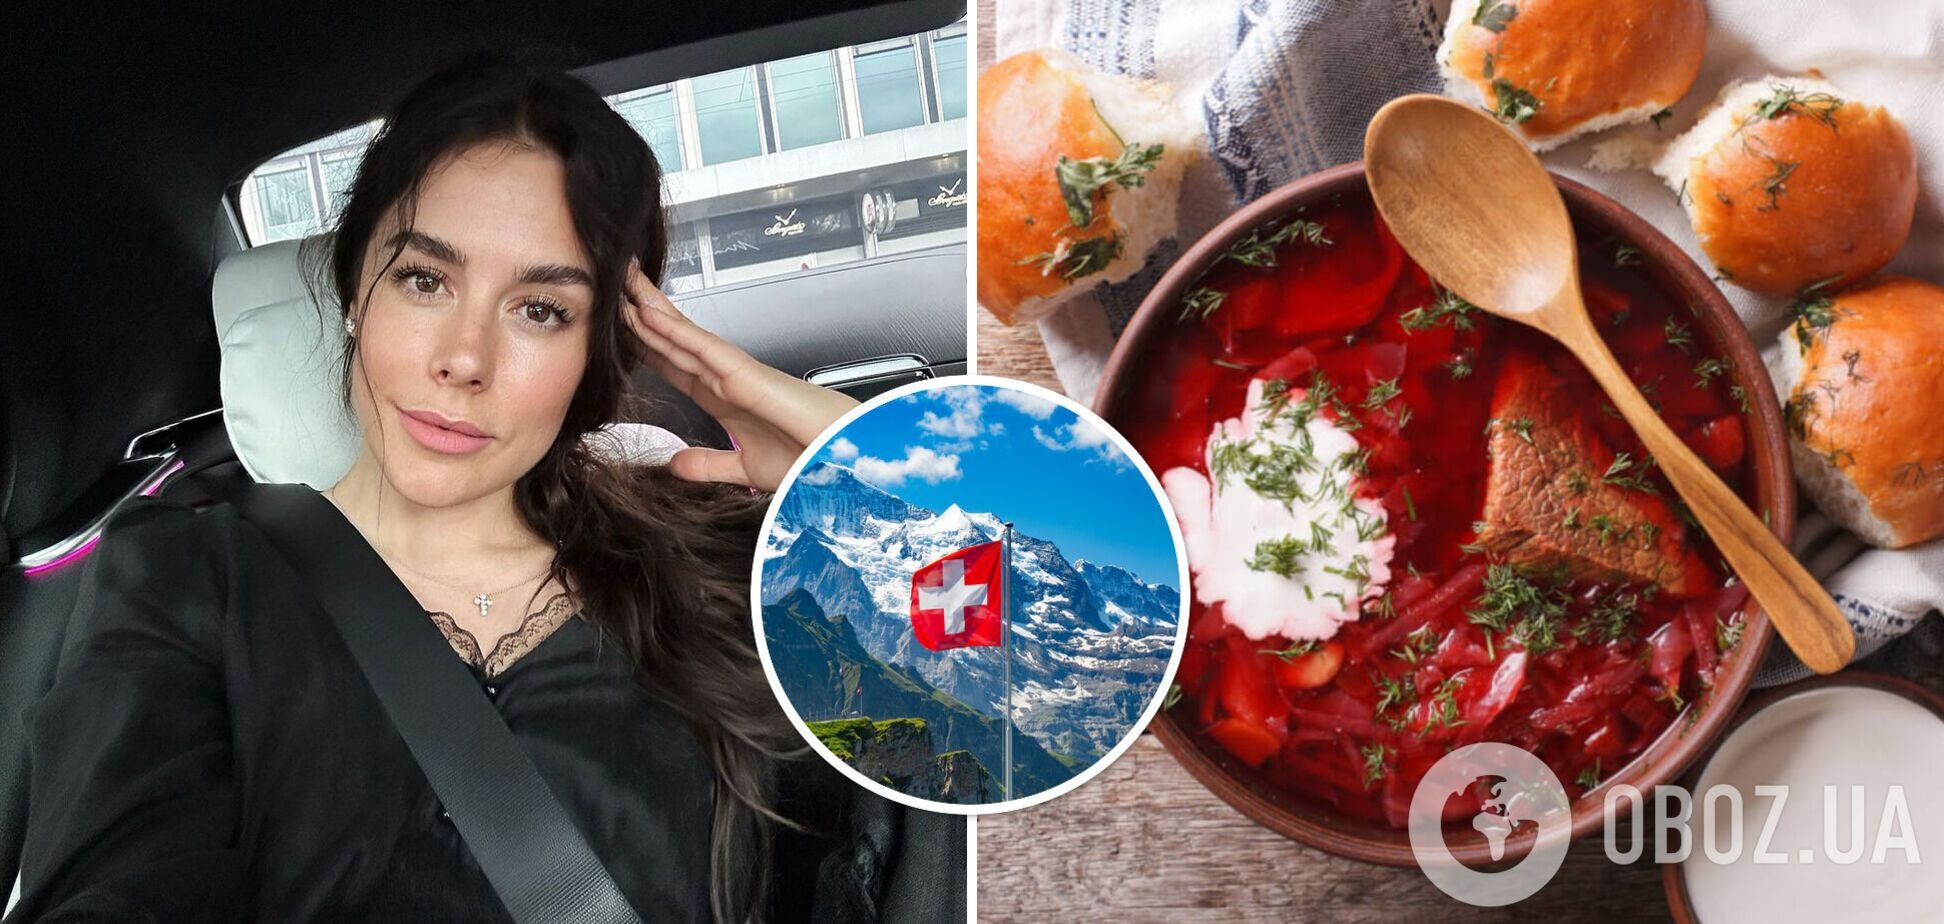 Сколько стоит приготовить борщ в Швейцарии: Иванна Онофрийчук сняла видео с супермаркета, где только капуста обошлась в 350 грн